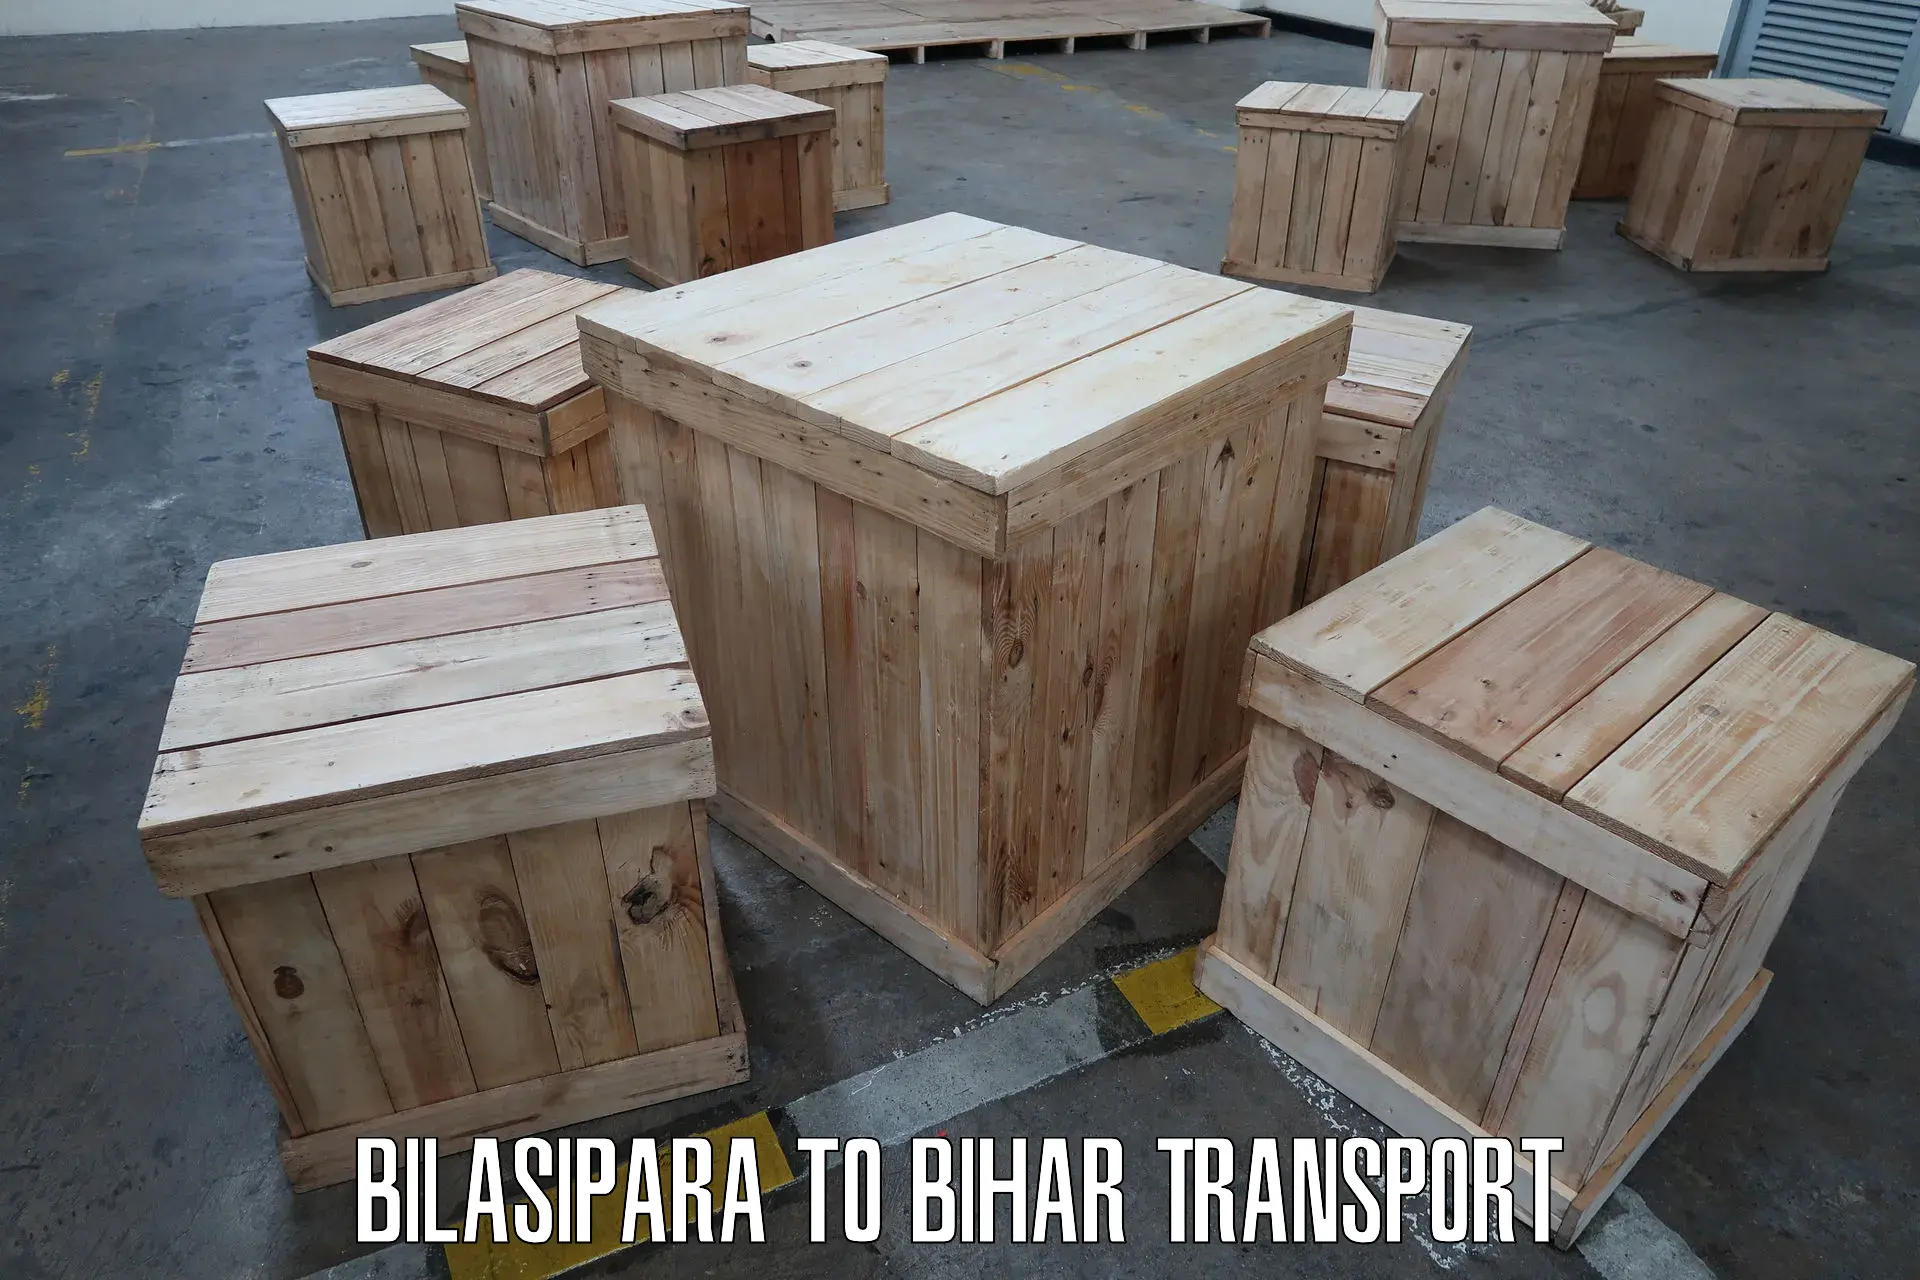 Bike shipping service Bilasipara to Mahnar Bazar